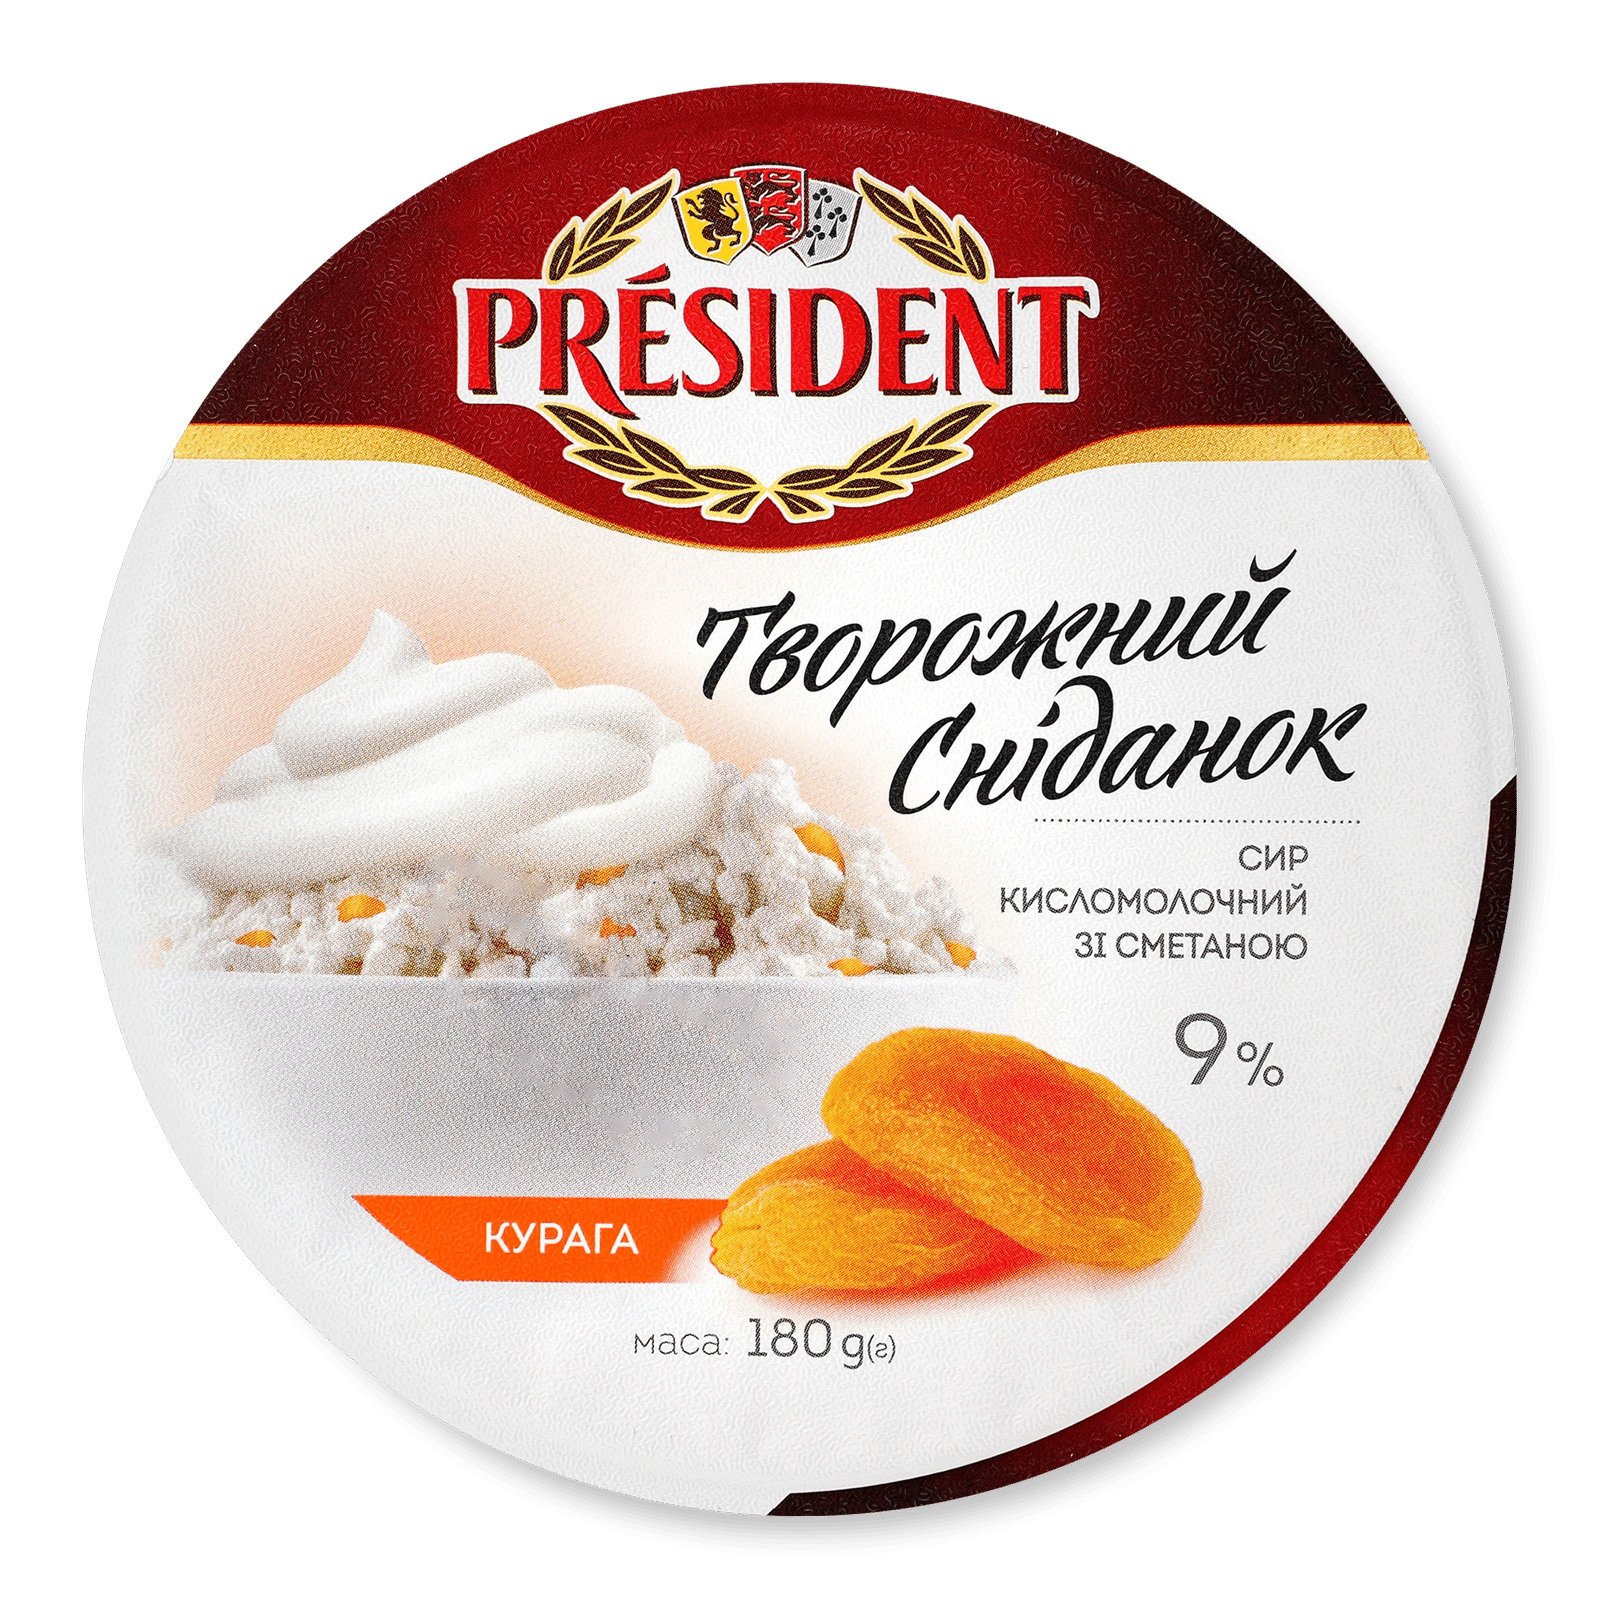 Сир кисломолочний President зі сметаною курага 9% - 1